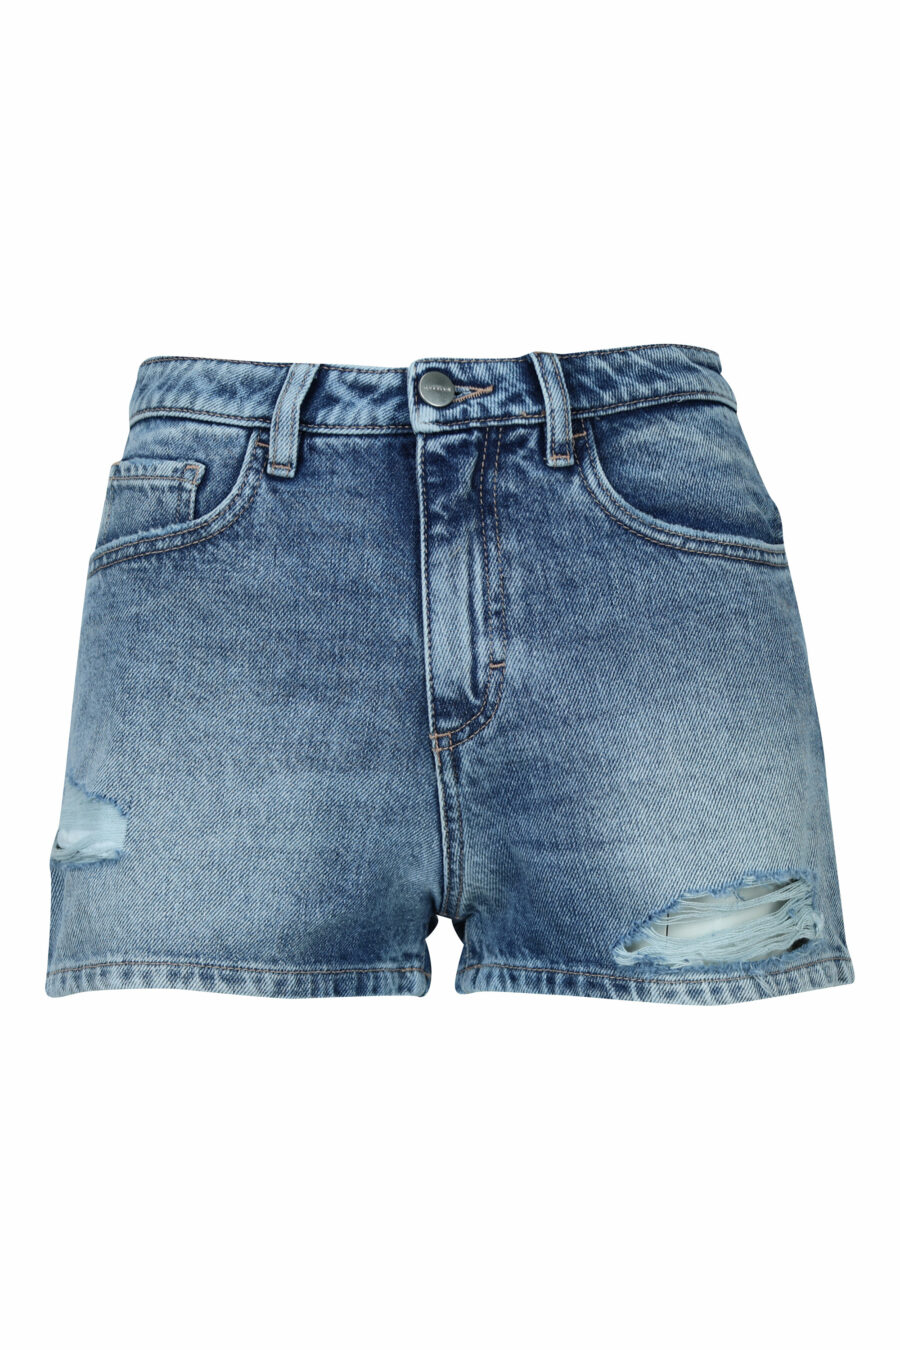 Blue denim shorts "Sam" - 8059772787604